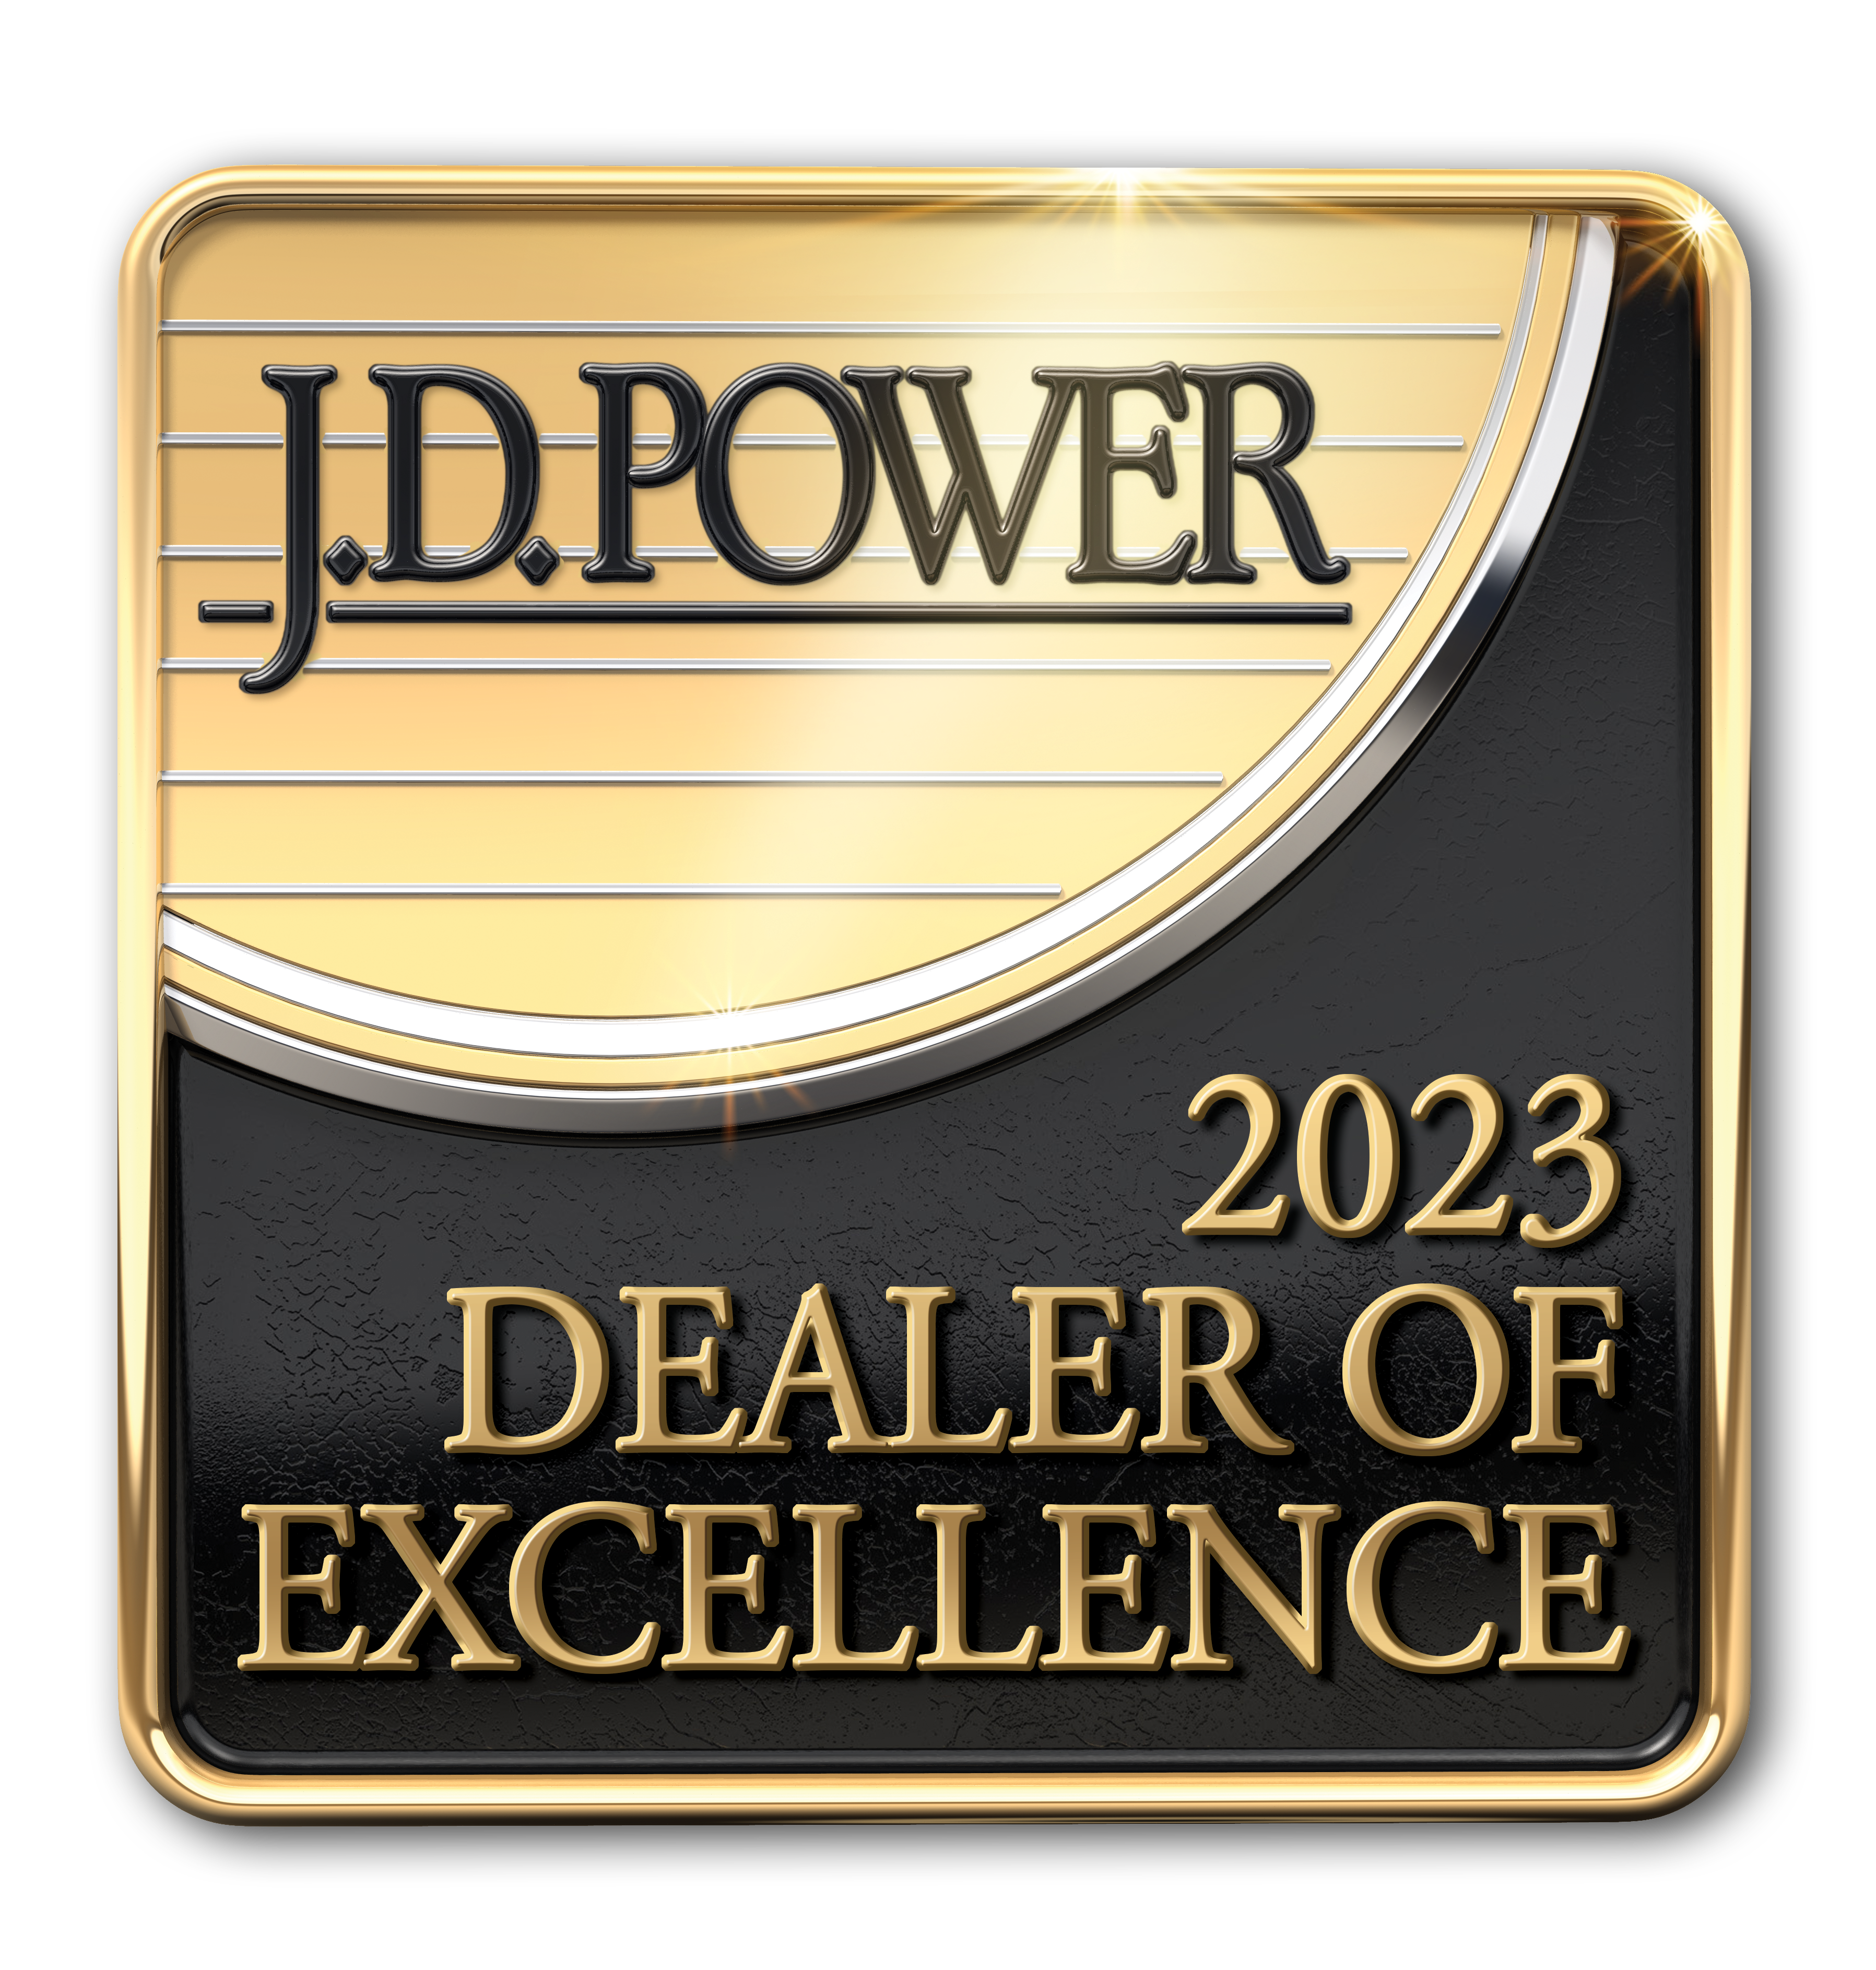 J.D. Power Emblem